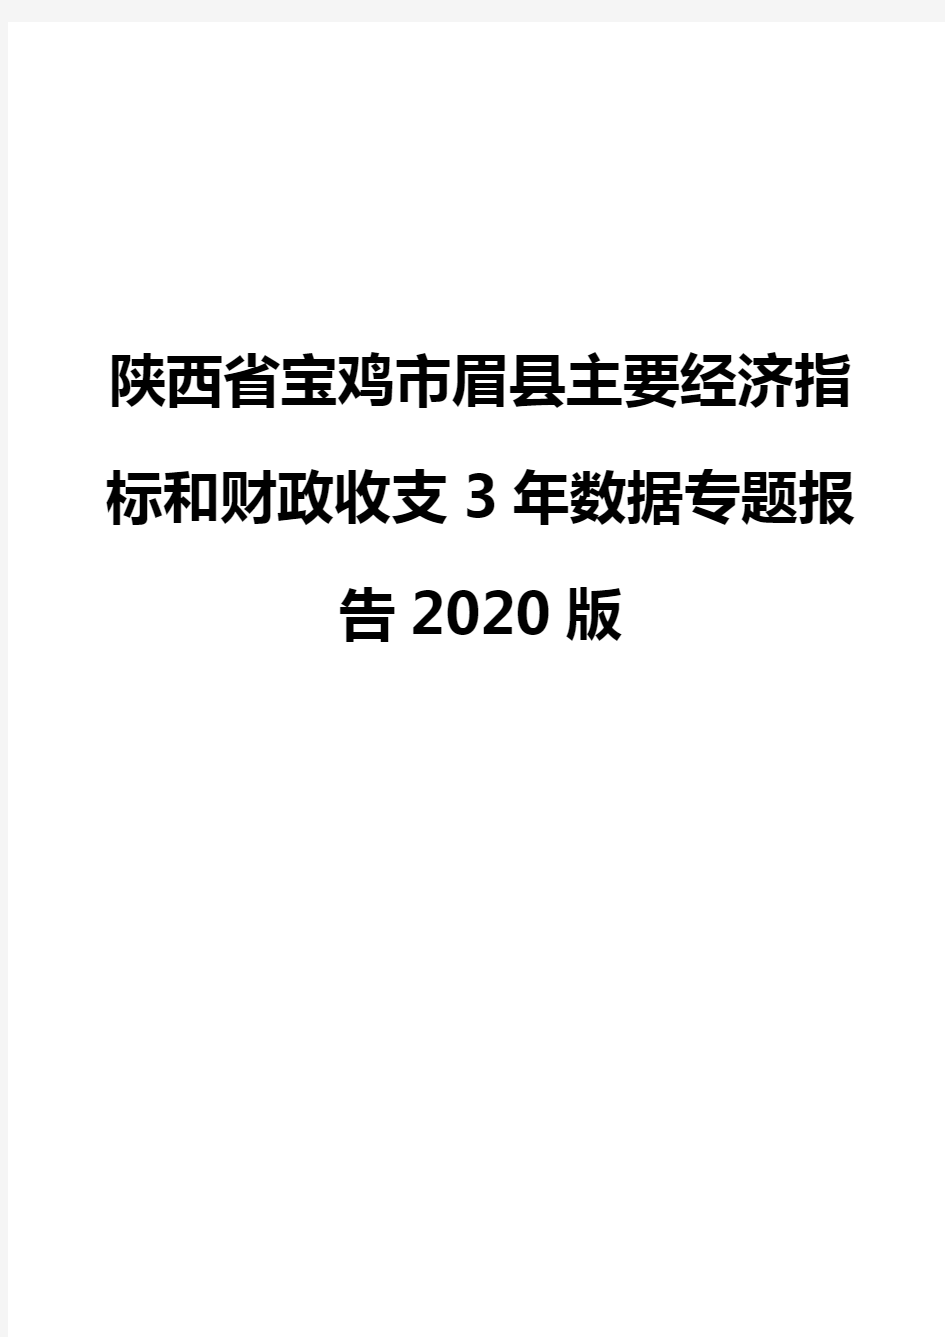 陕西省宝鸡市眉县主要经济指标和财政收支3年数据专题报告2020版